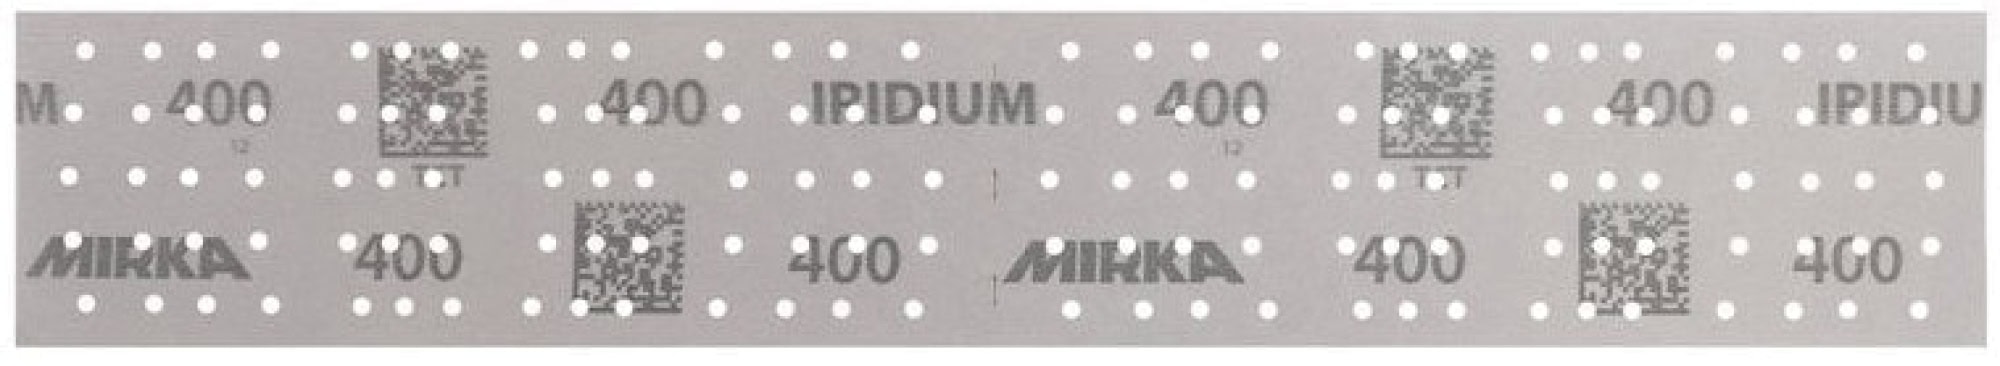 Mirka® Iridium® 246B205032, 70 mm x 400 mm, 2 mal in 70 x 198 mm Stücke perforiert, P320, Multilochung, Kletthaftend, Schleifstreifen mit Keramik- und Aluminiumkorn